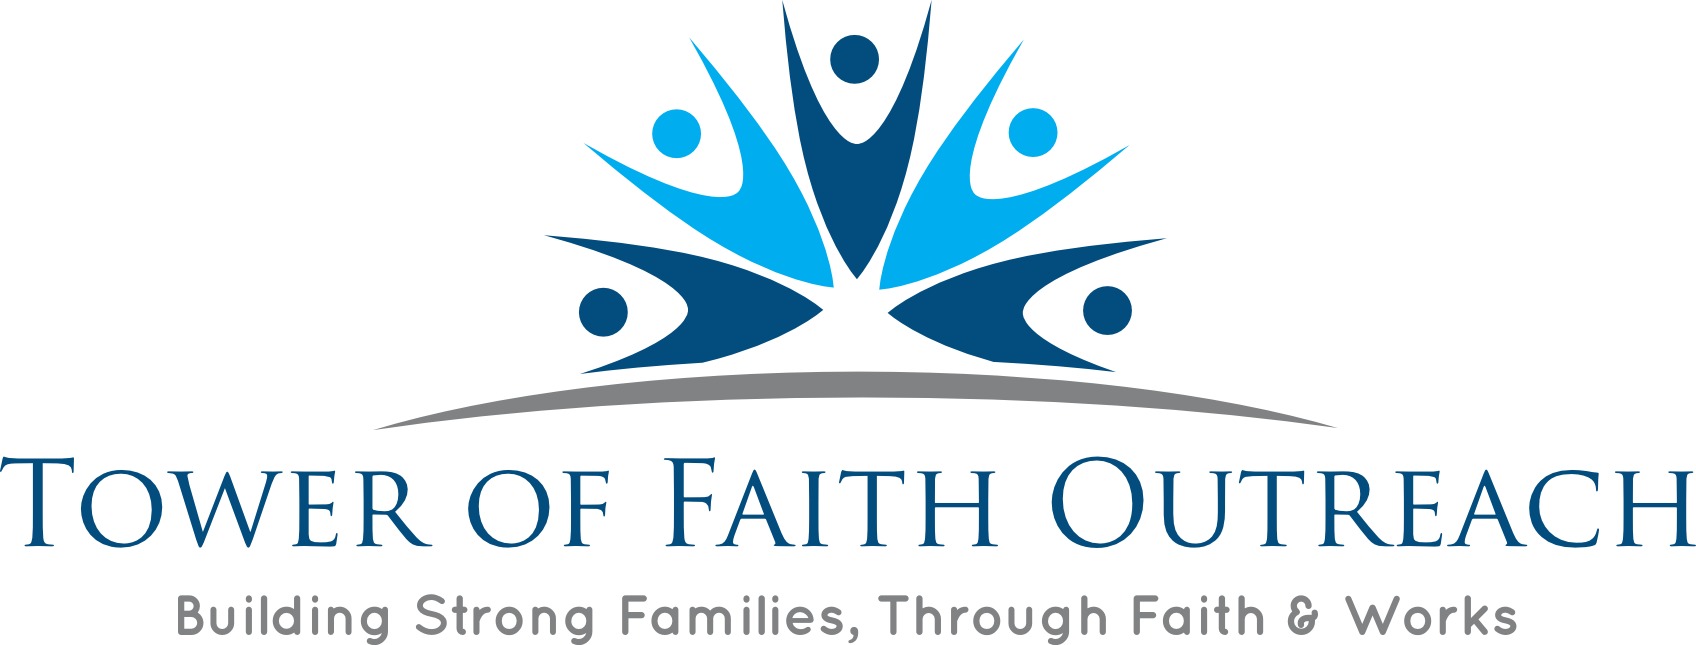 Tower of Faith Outreach logo